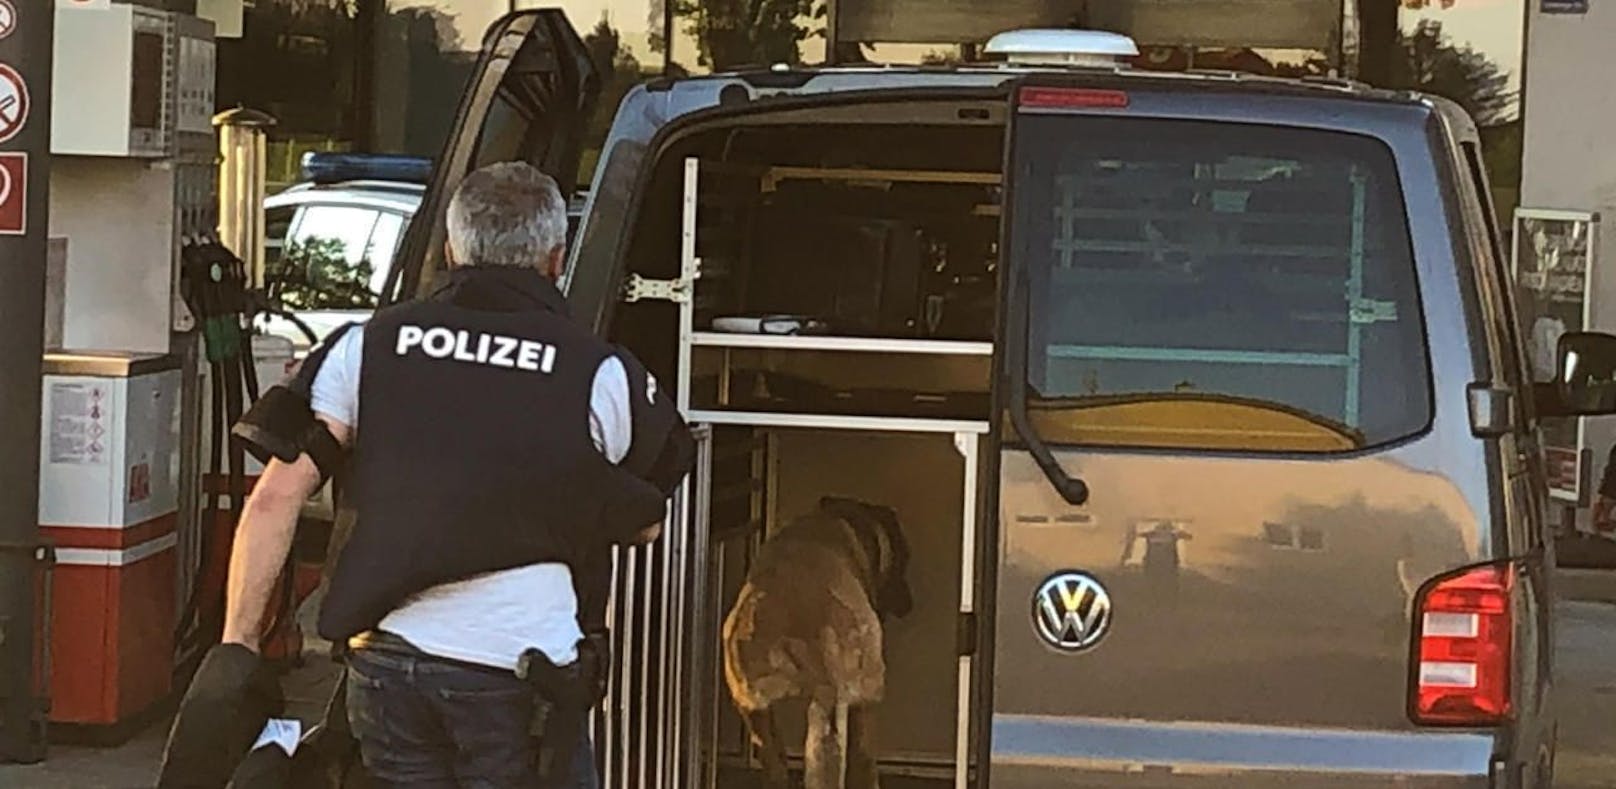 Ein bewaffnetes Trio hat Sonntagabend eine AVIA-Tankstelle in Aurolzmünster (Bez. Ried) überfallen. Die Polizei leitete eine sofortige Fahndung ein.